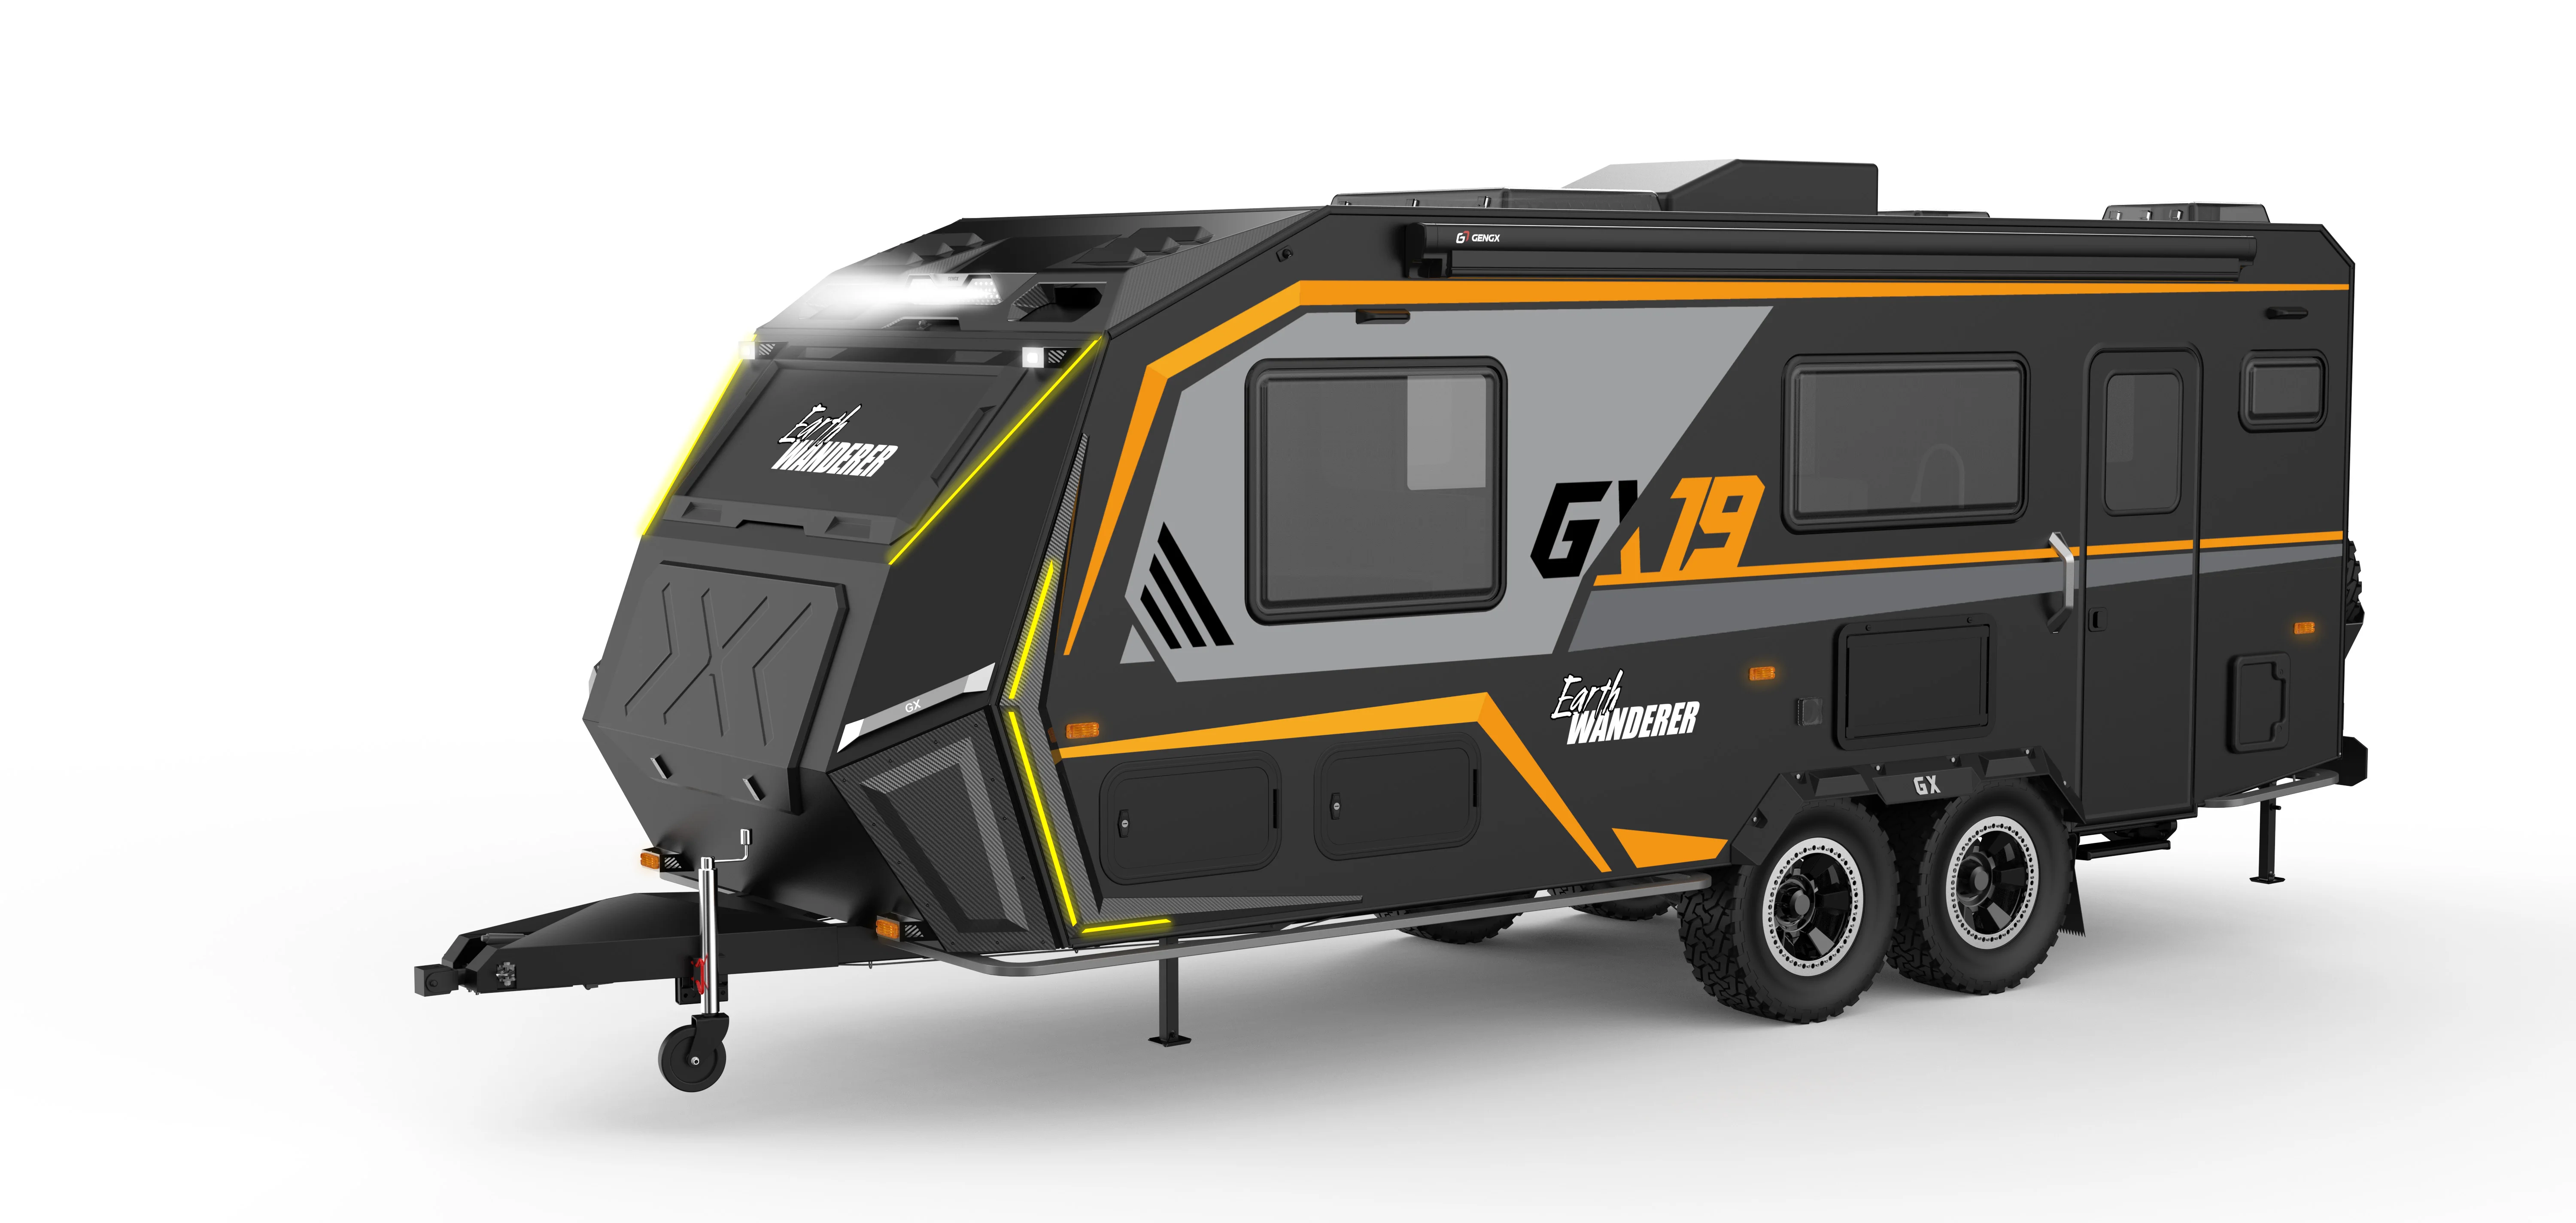 High Quality Motorhome Off Road Caravan Trailer Camper Rv Camper Van ...